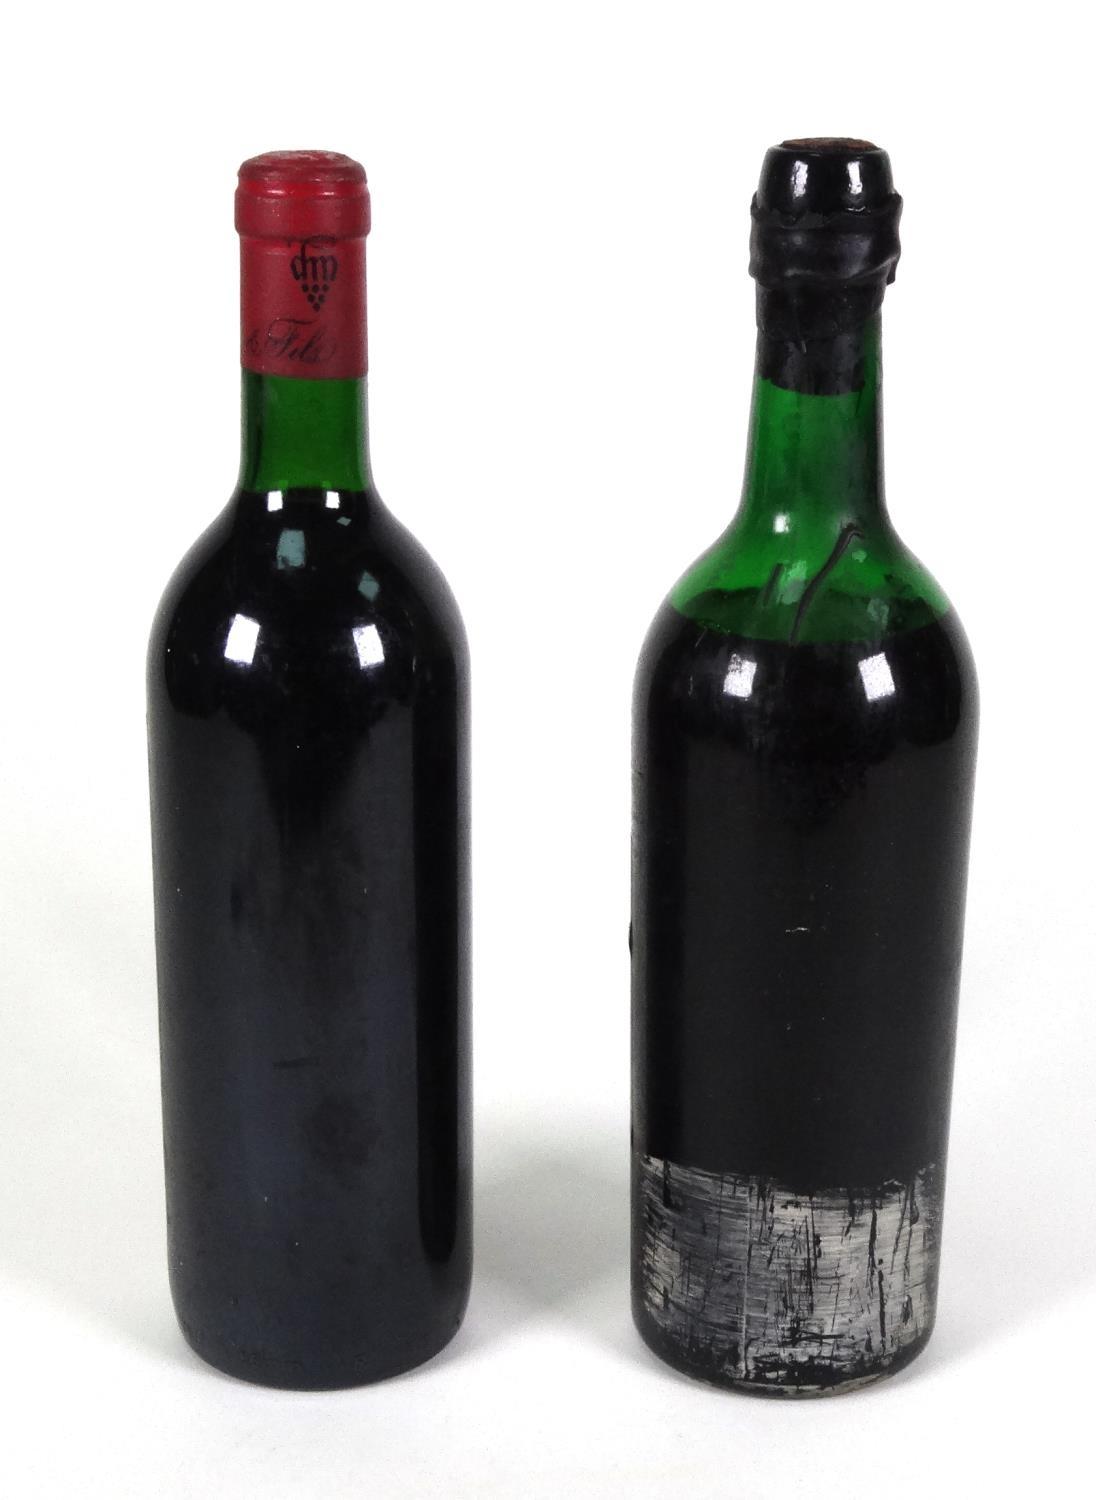 Bottle of 1990 Chateau de Grange red wine, together with a bottle of Croft 1963 vintage port - Image 4 of 4